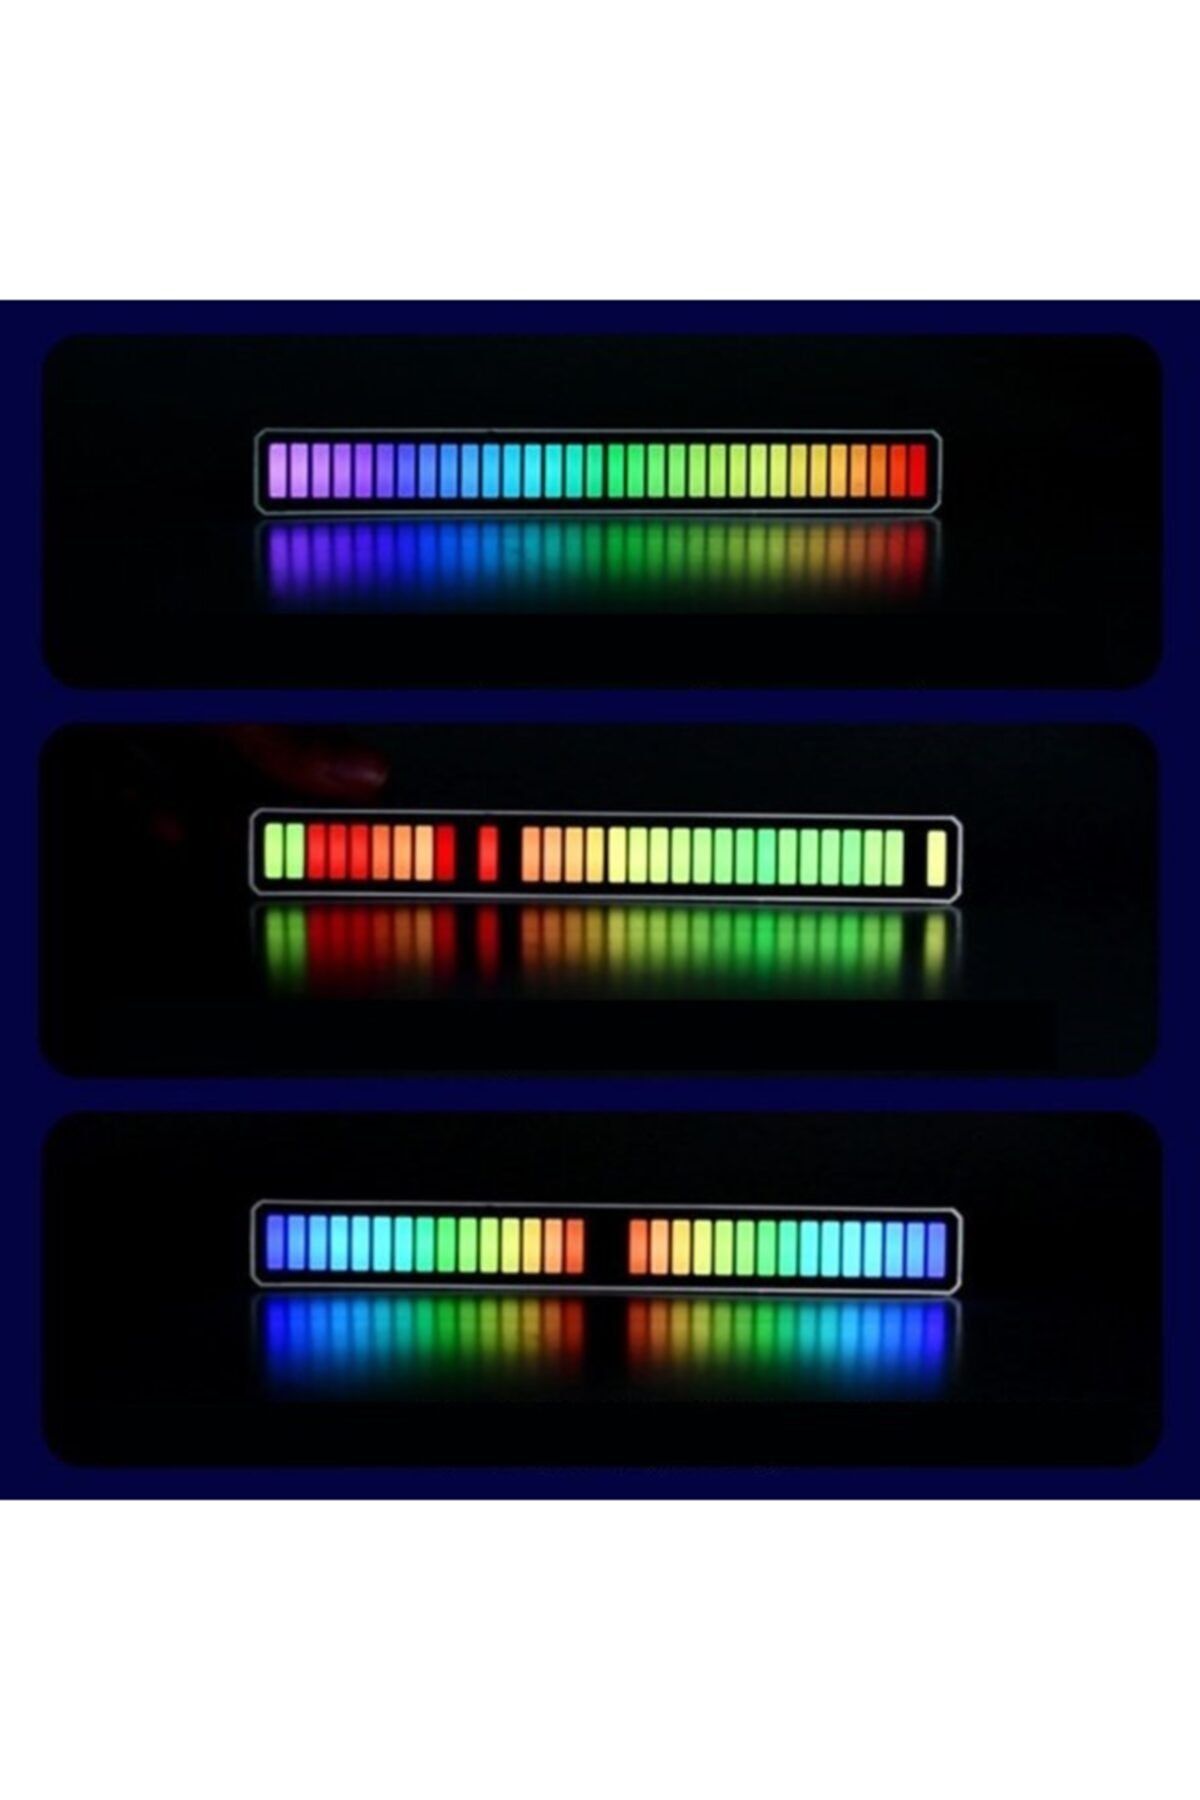 JUNGLEE Rgb Ses Kontrol Ritim Işığı 32 Bit Göstergeli Sesle Araba/pc/tv/oda/masaüstü Için Renkli Led Işık